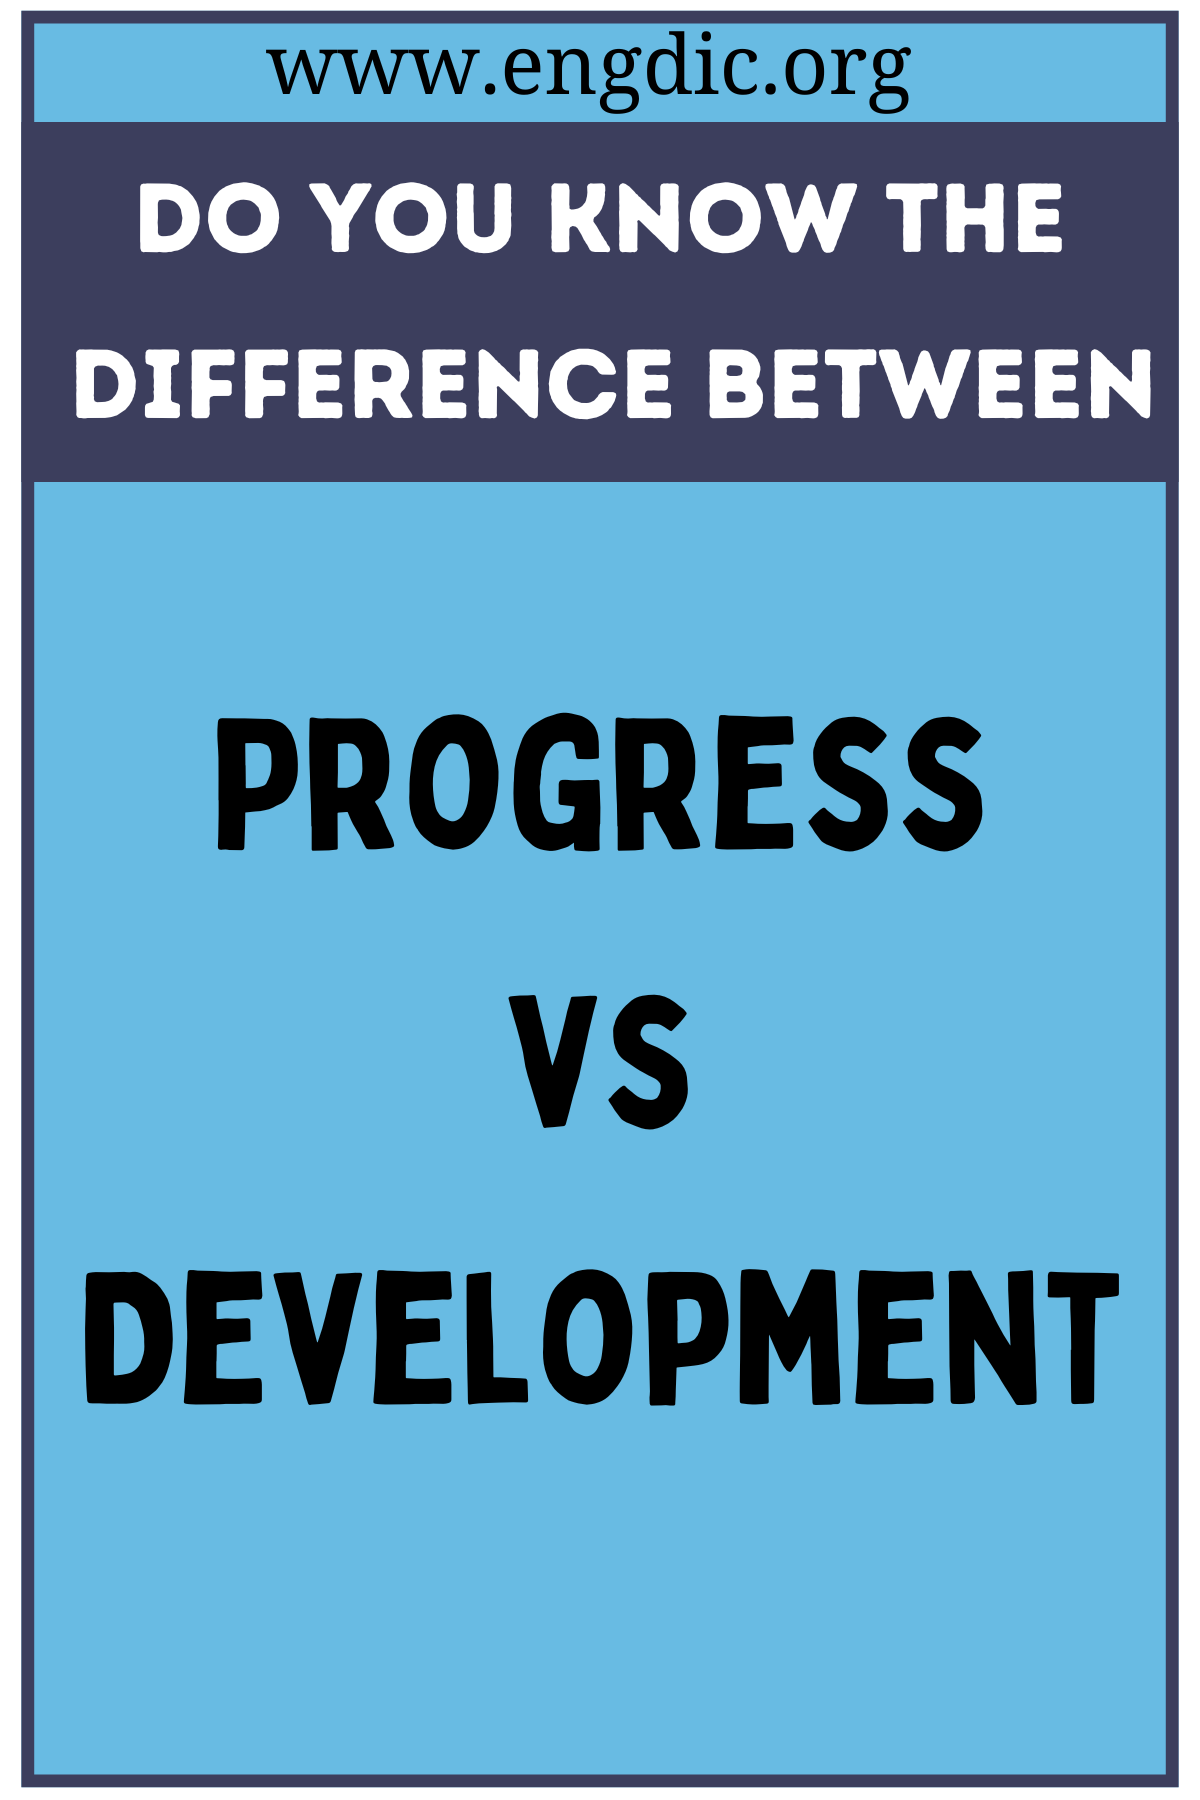 Progress vs Development